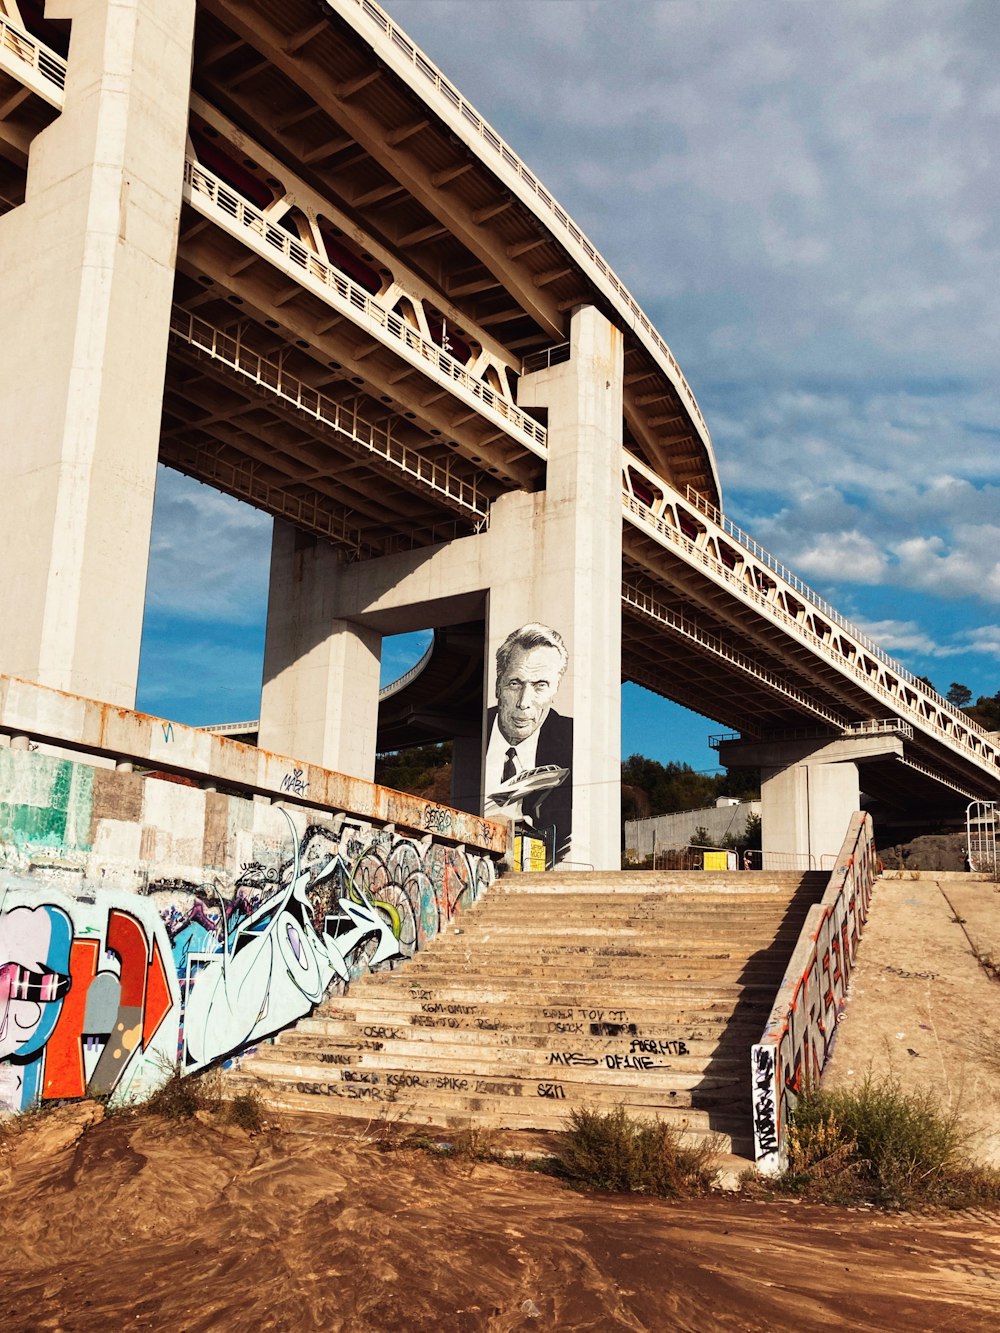 橋の脇に描かれた男性の大きな壁画